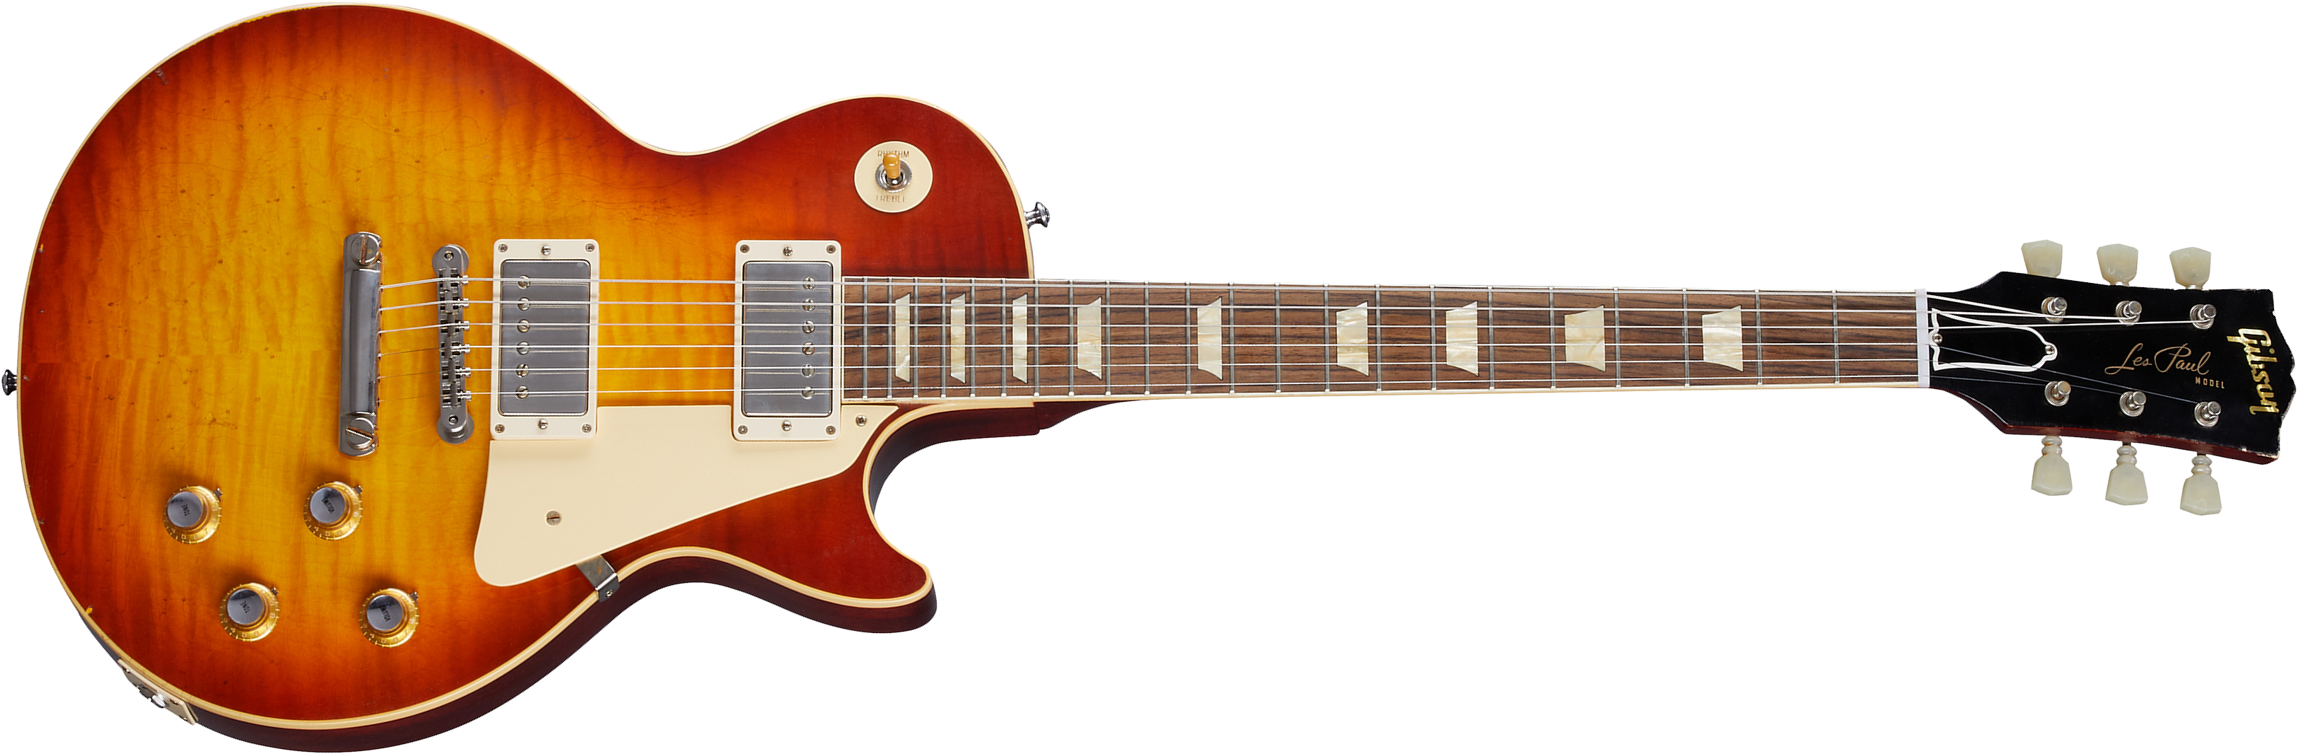 Gibson Custom Shop Murphy Lab Les Paul Standard 1960 Reissue - Light Aged Tomato Soup Burst - Guitarra eléctrica de corte único. - Main picture